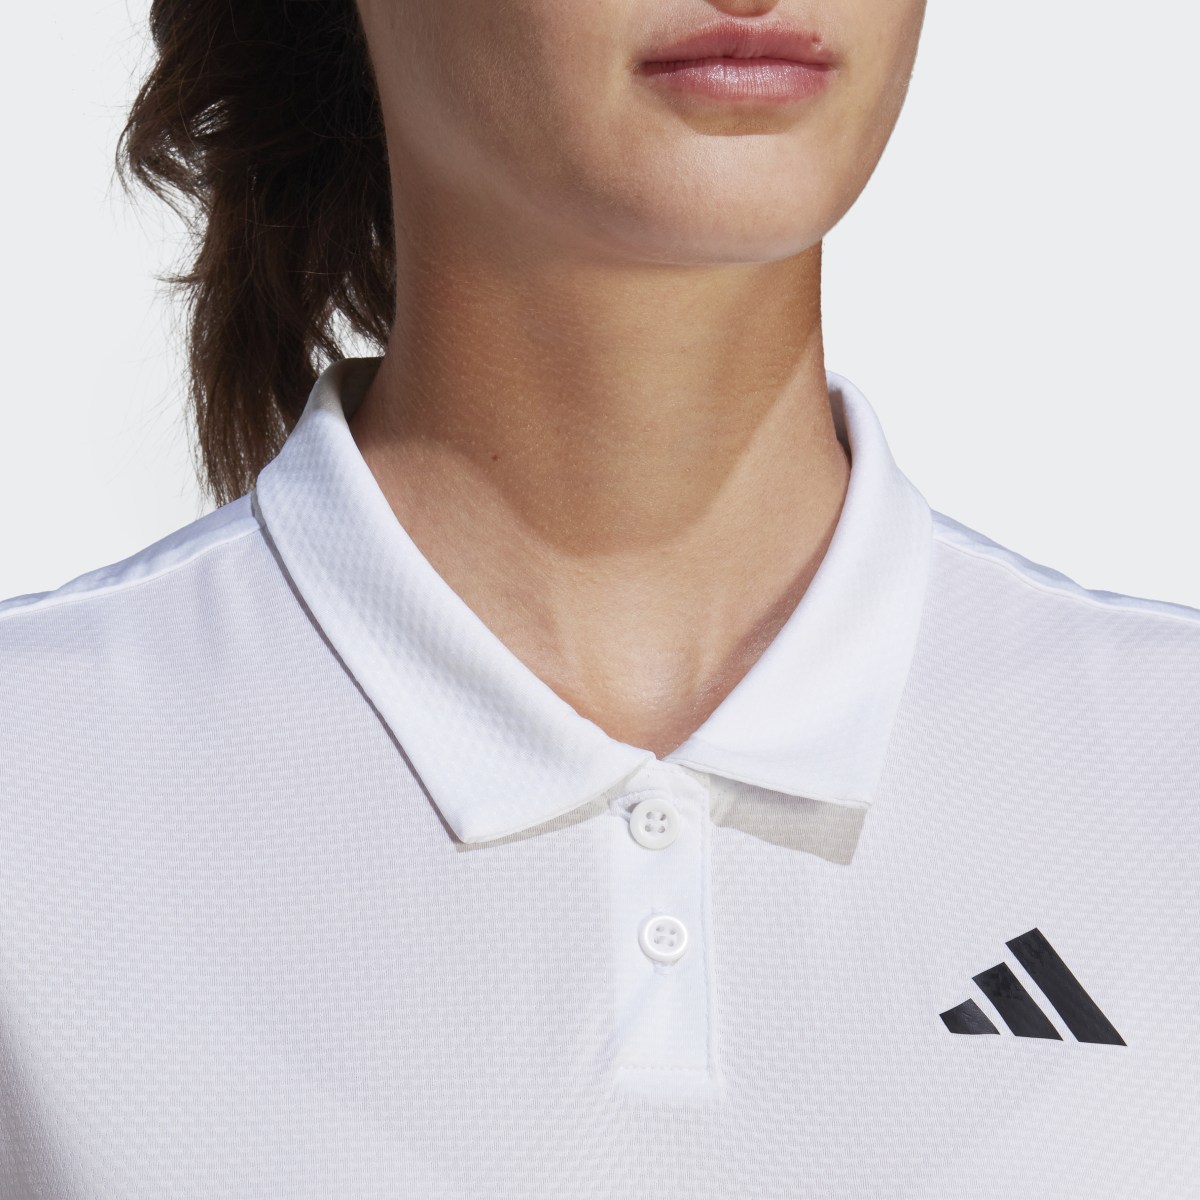 Adidas Club Tennis Polo Shirt. 6